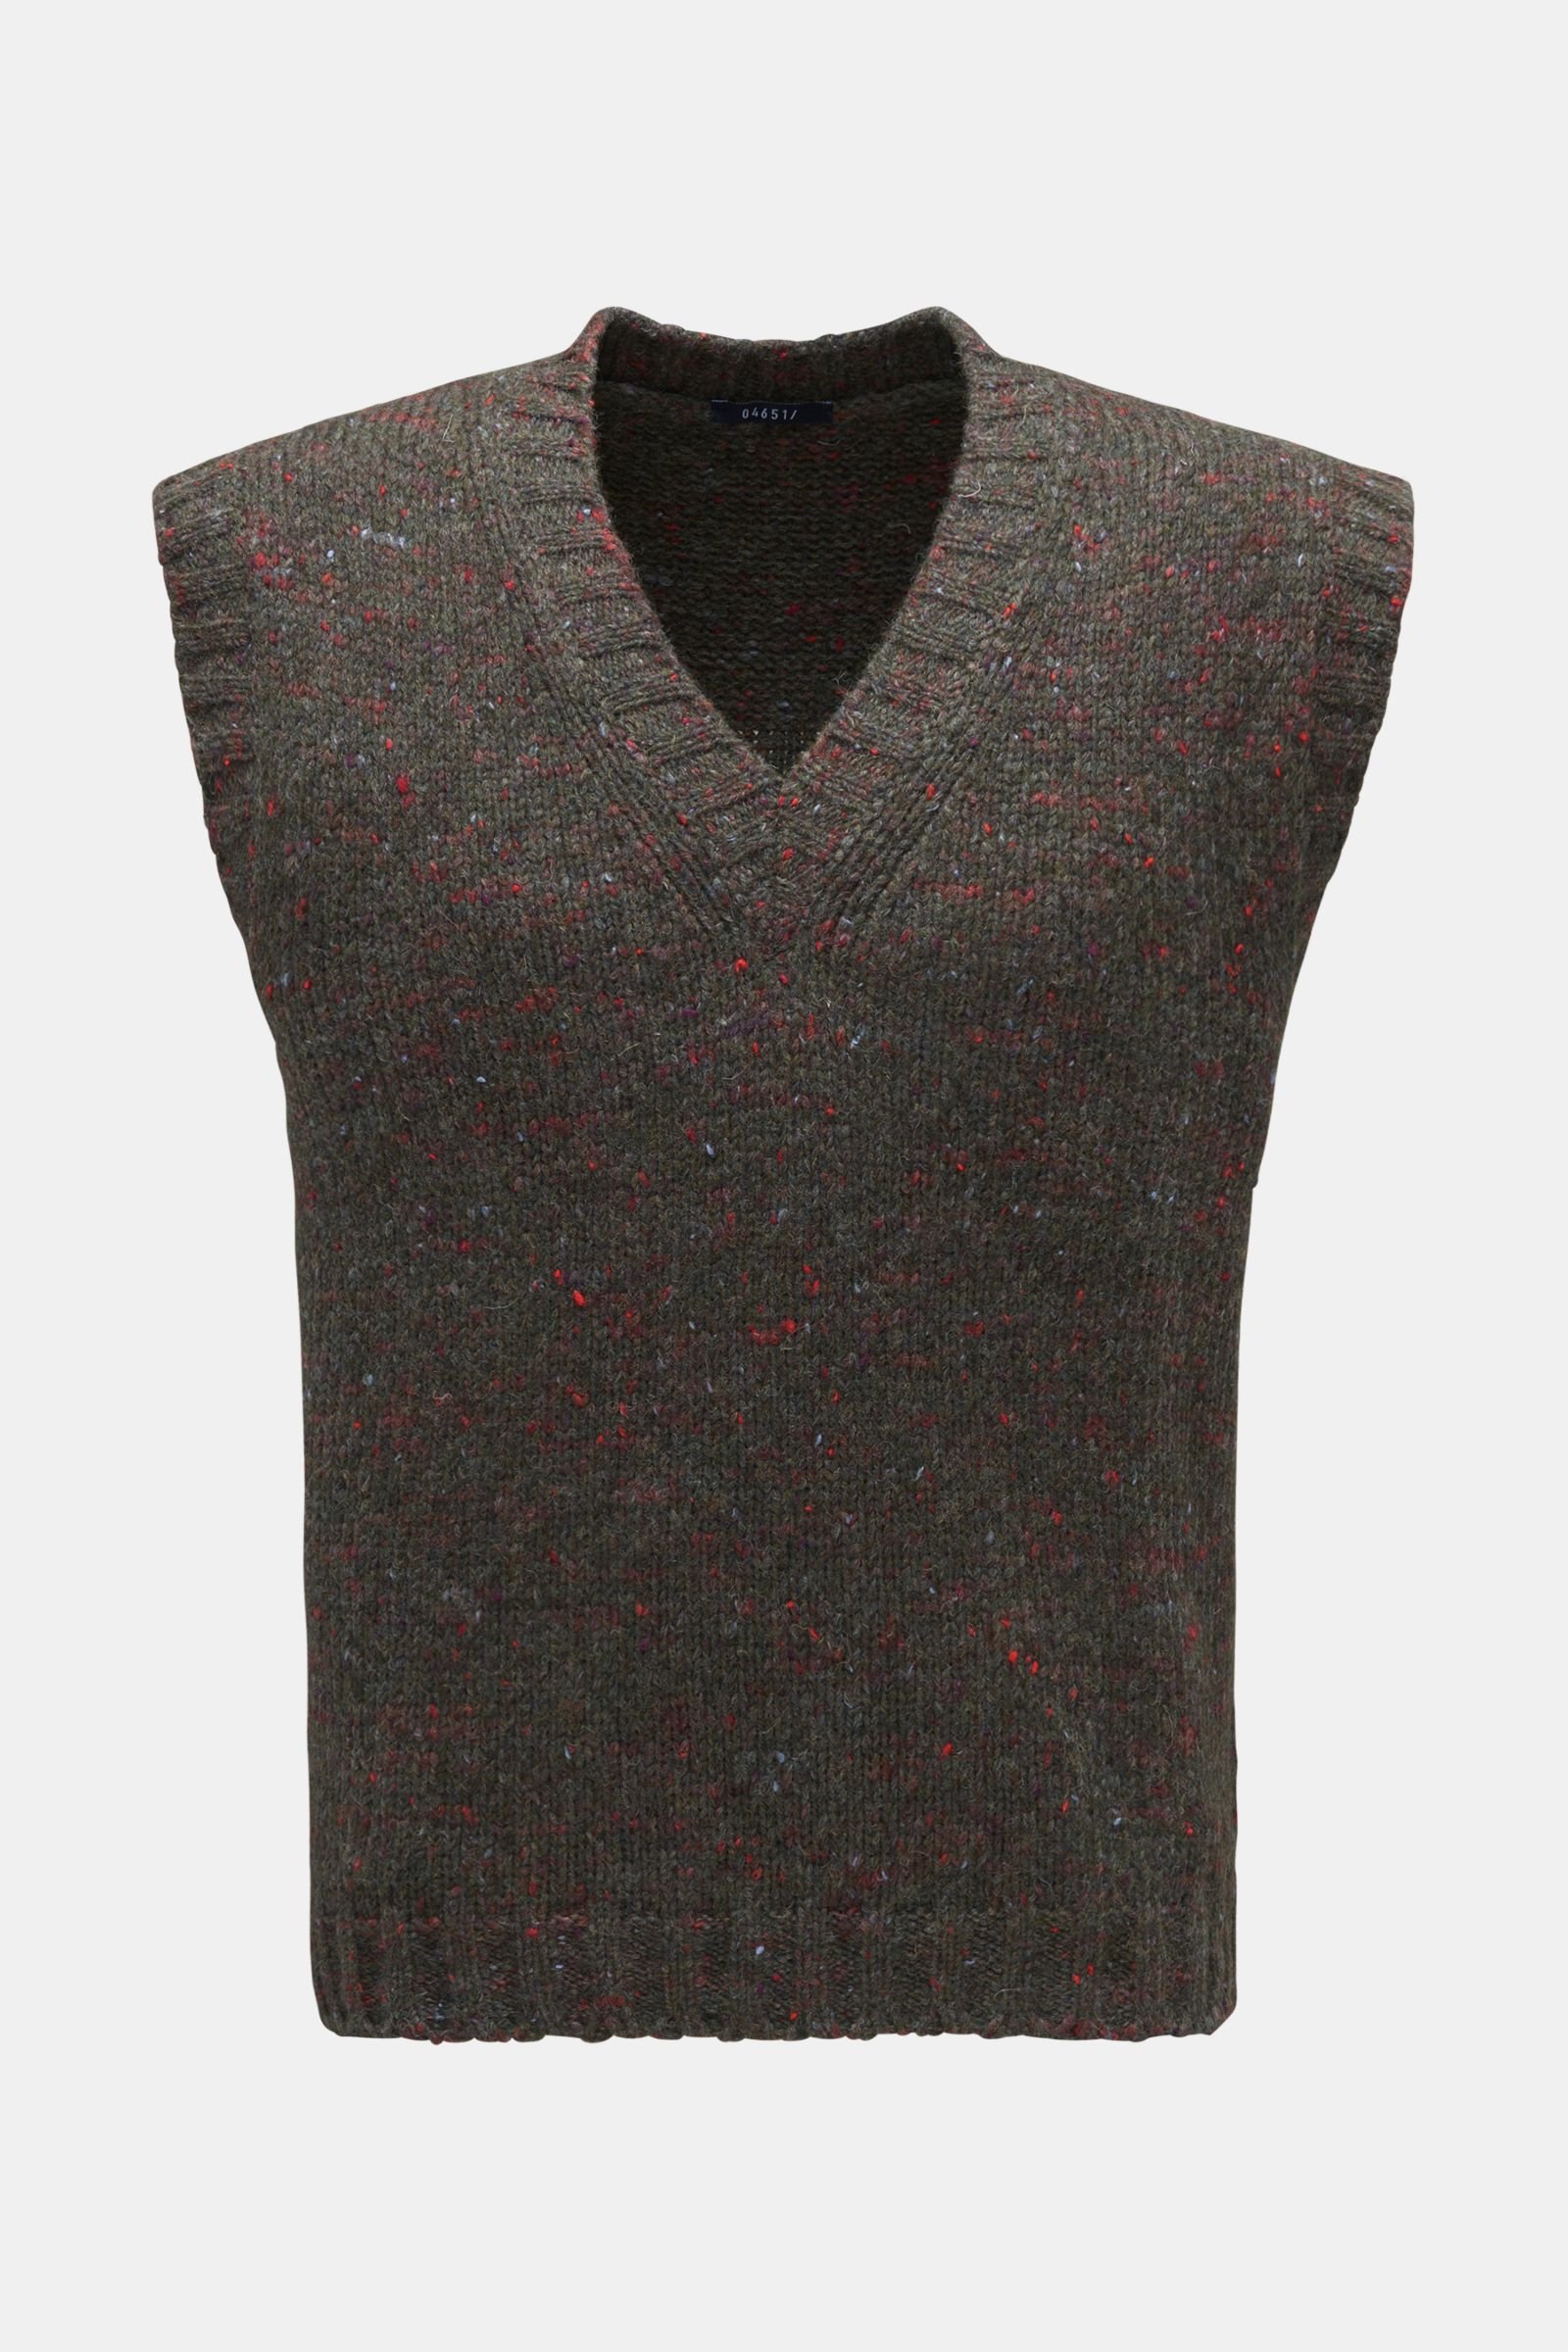 Sweater vest 'Donegal' dark olive/light red patterned